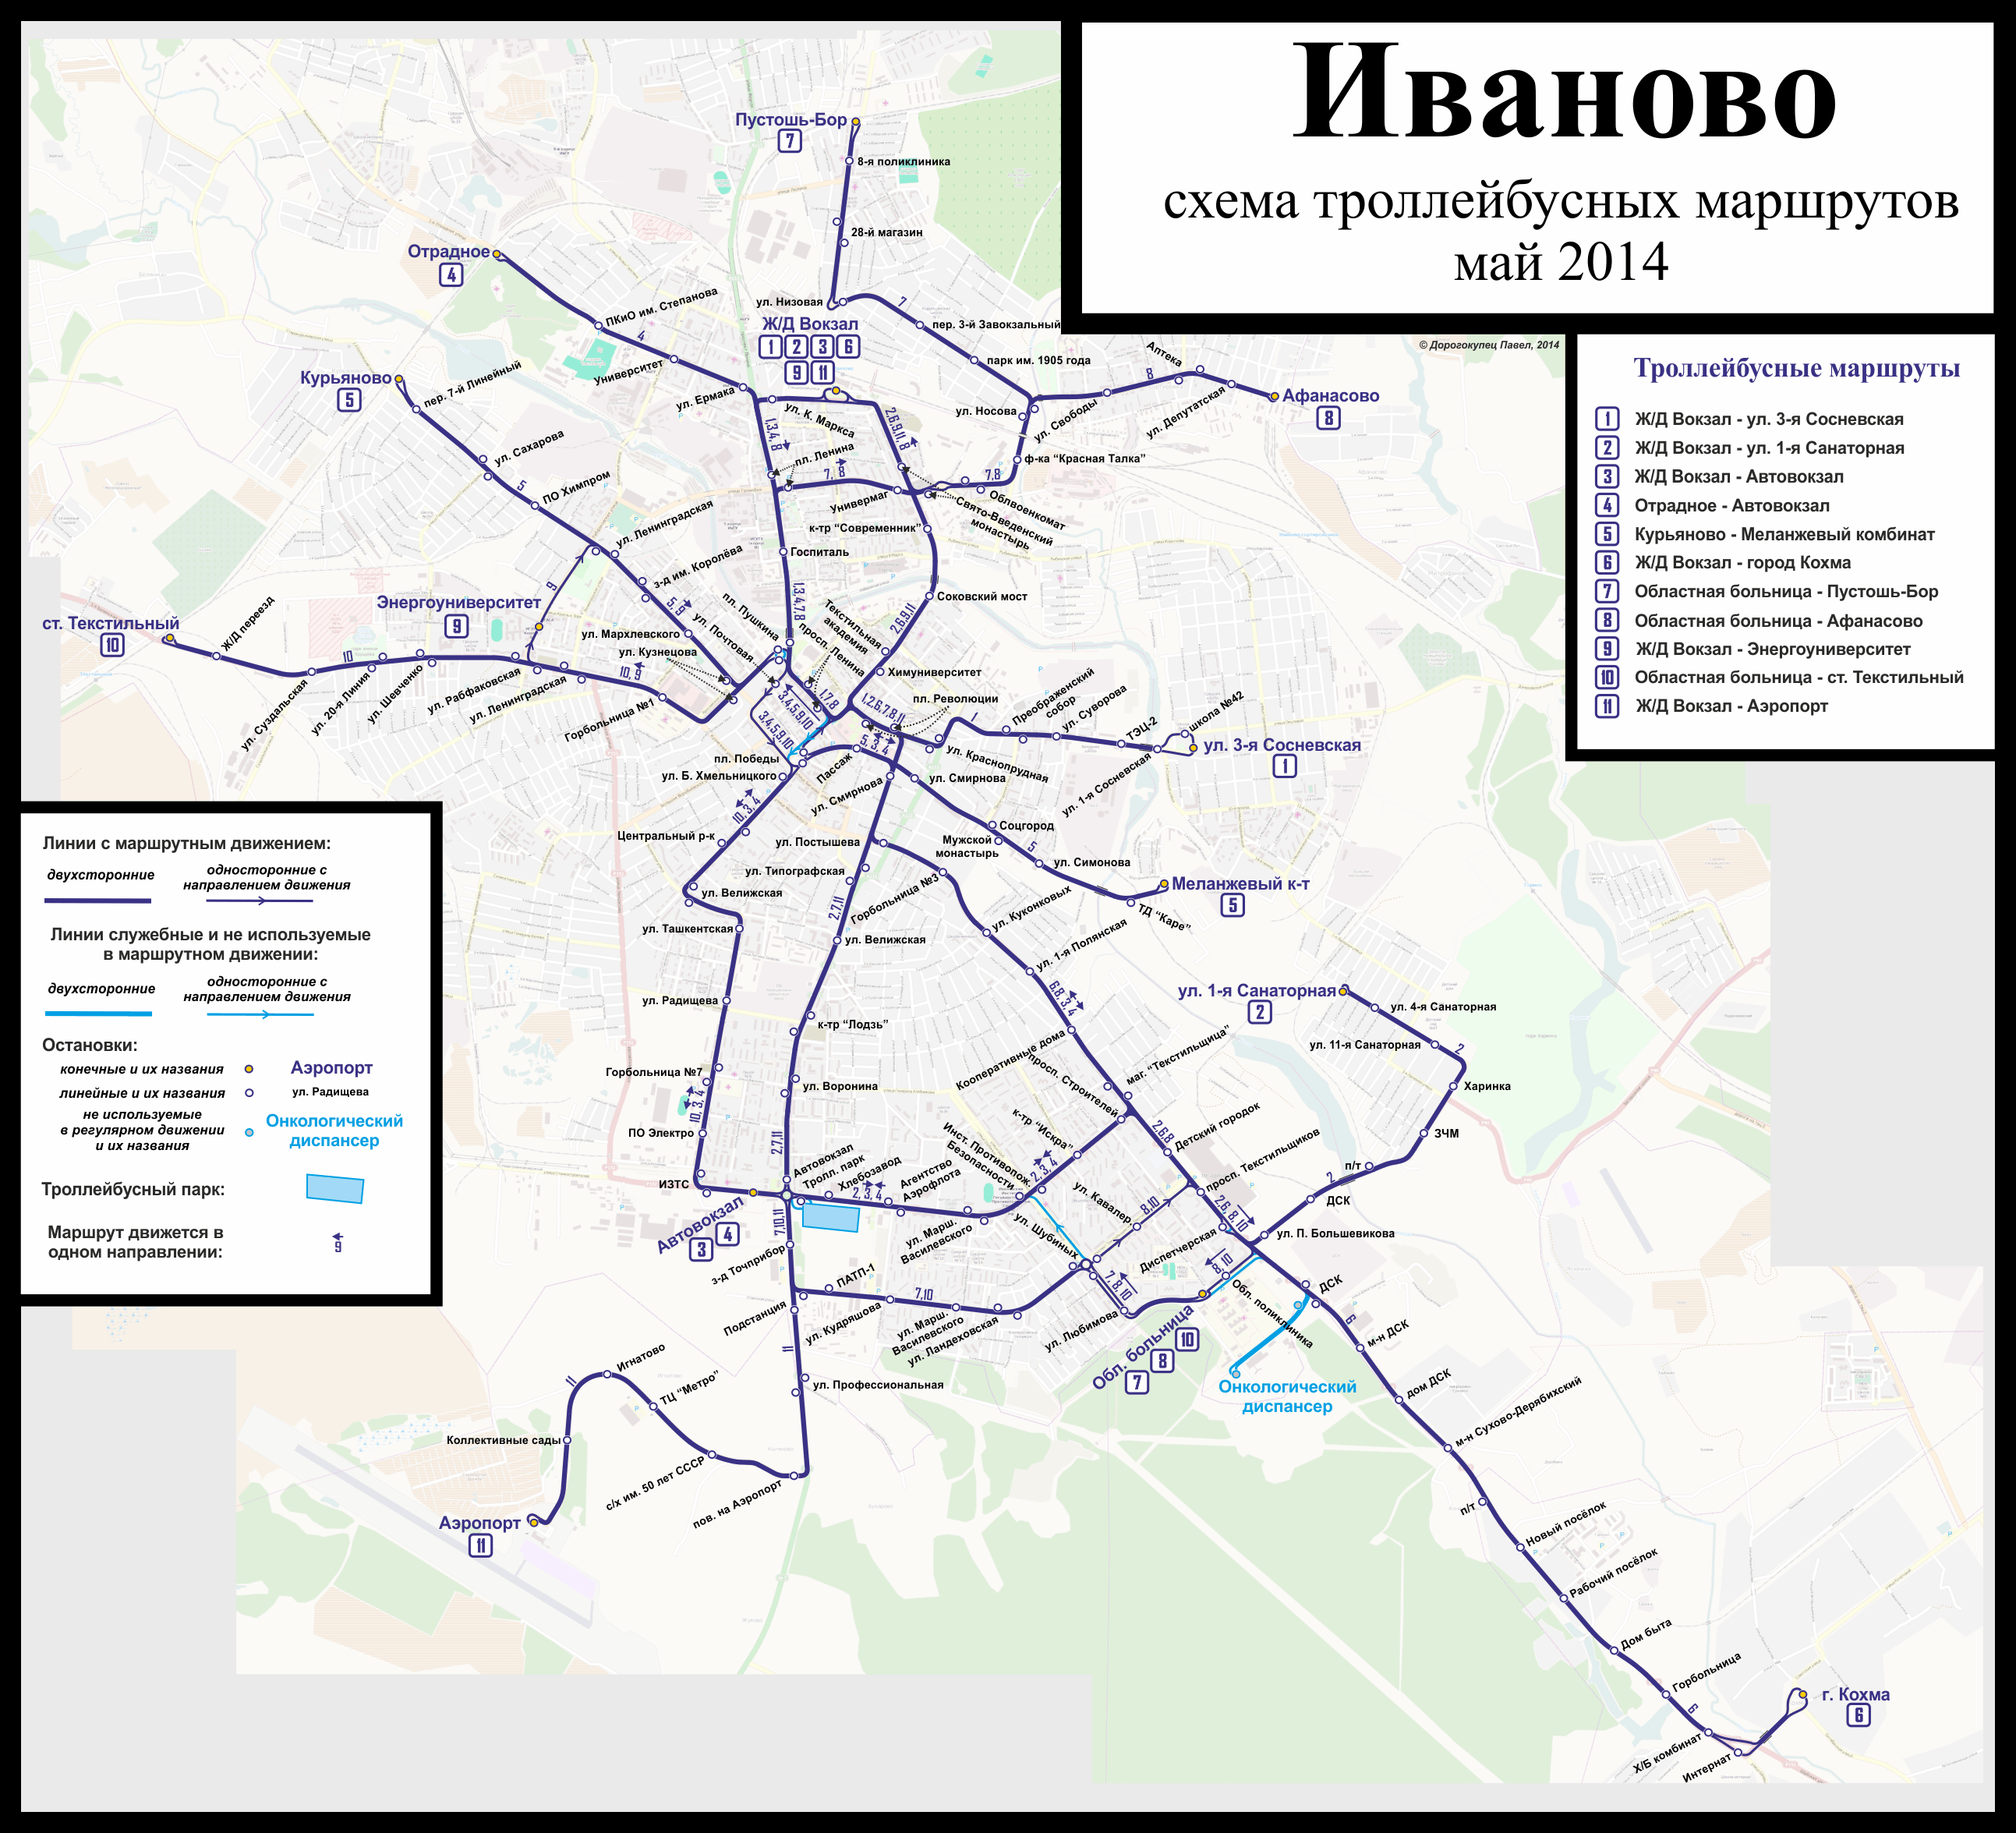 Иваново — Схемы